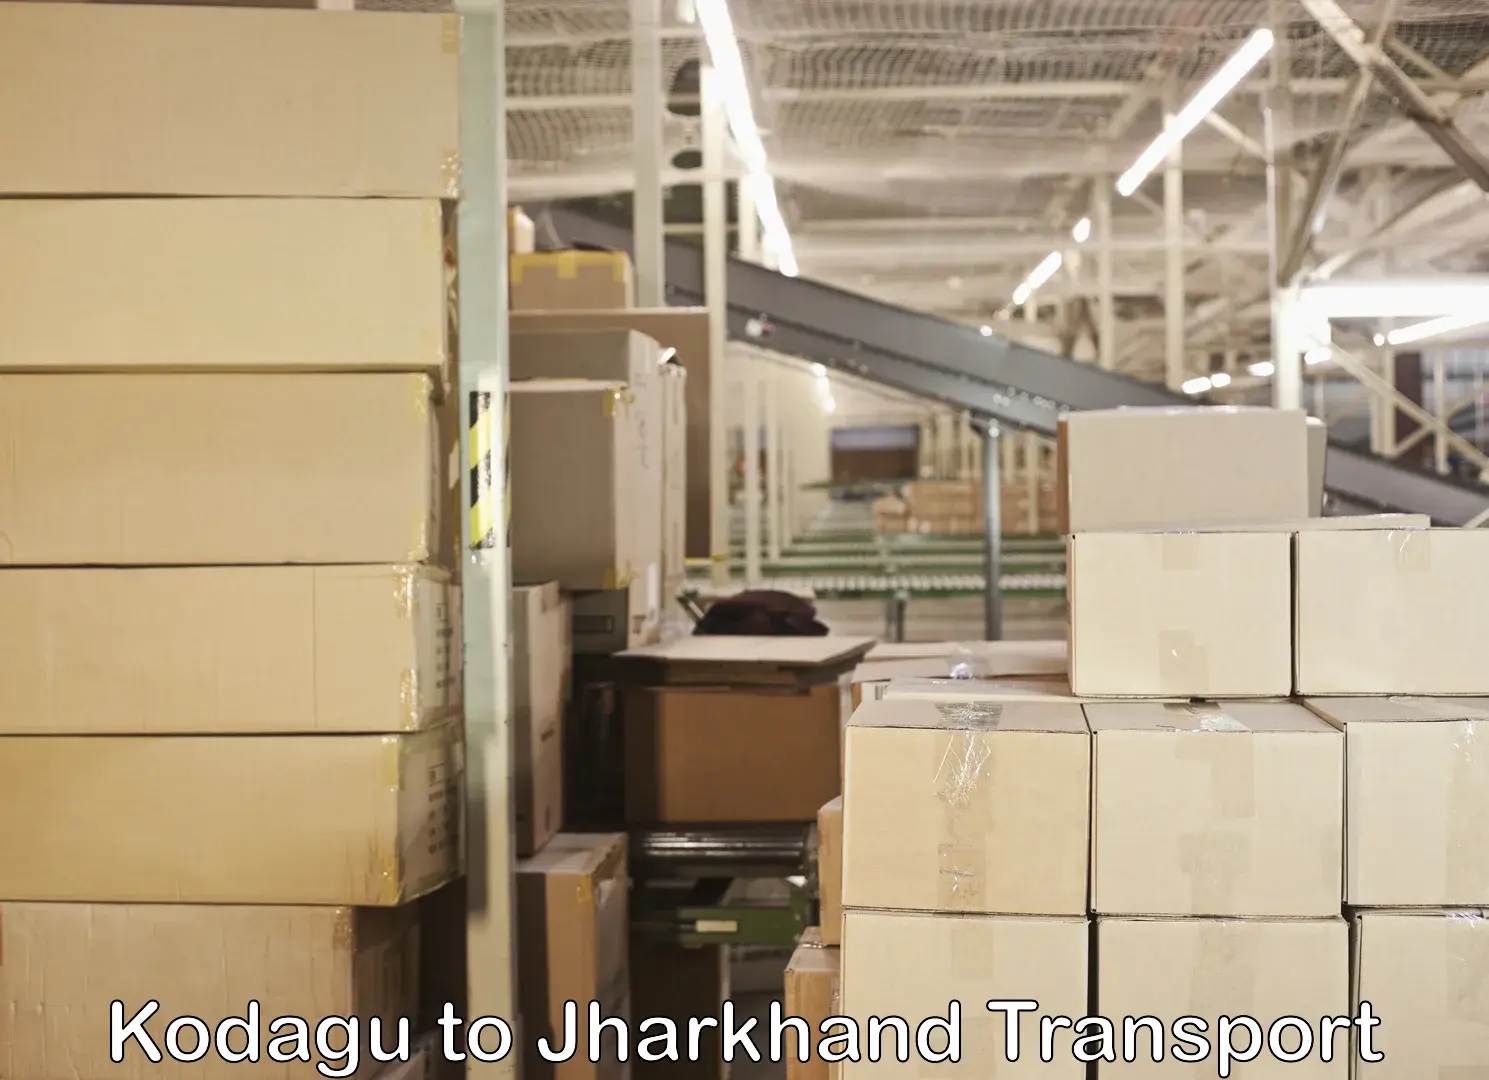 Daily parcel service transport Kodagu to Jharkhand